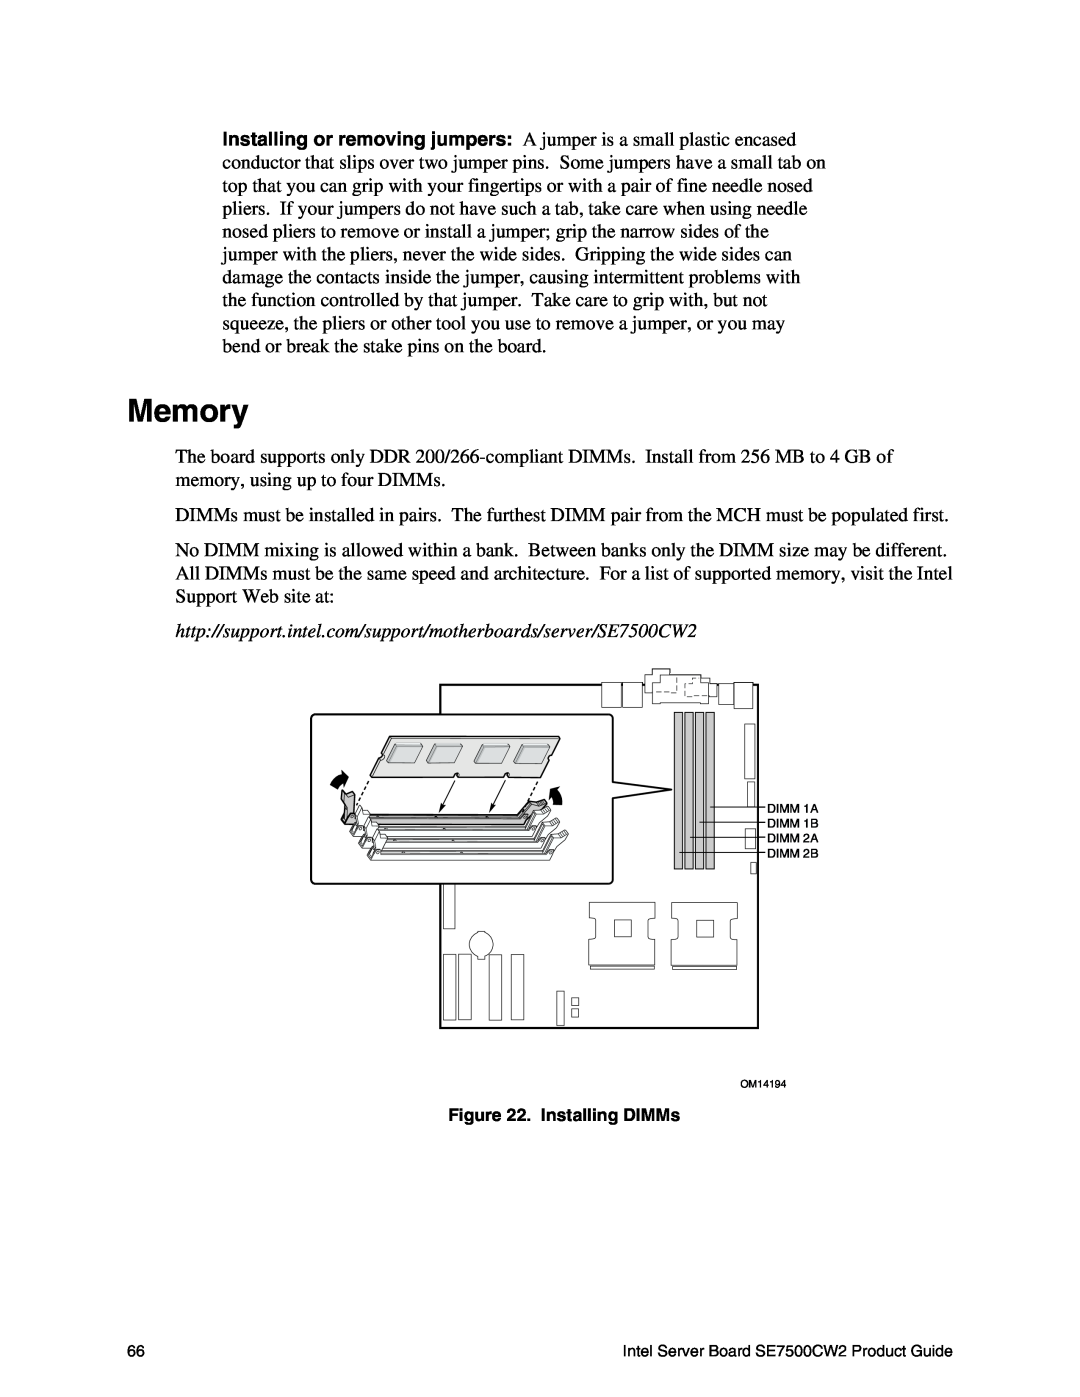 Intel SE7500CW2 manual Memory, Installing DIMMs 